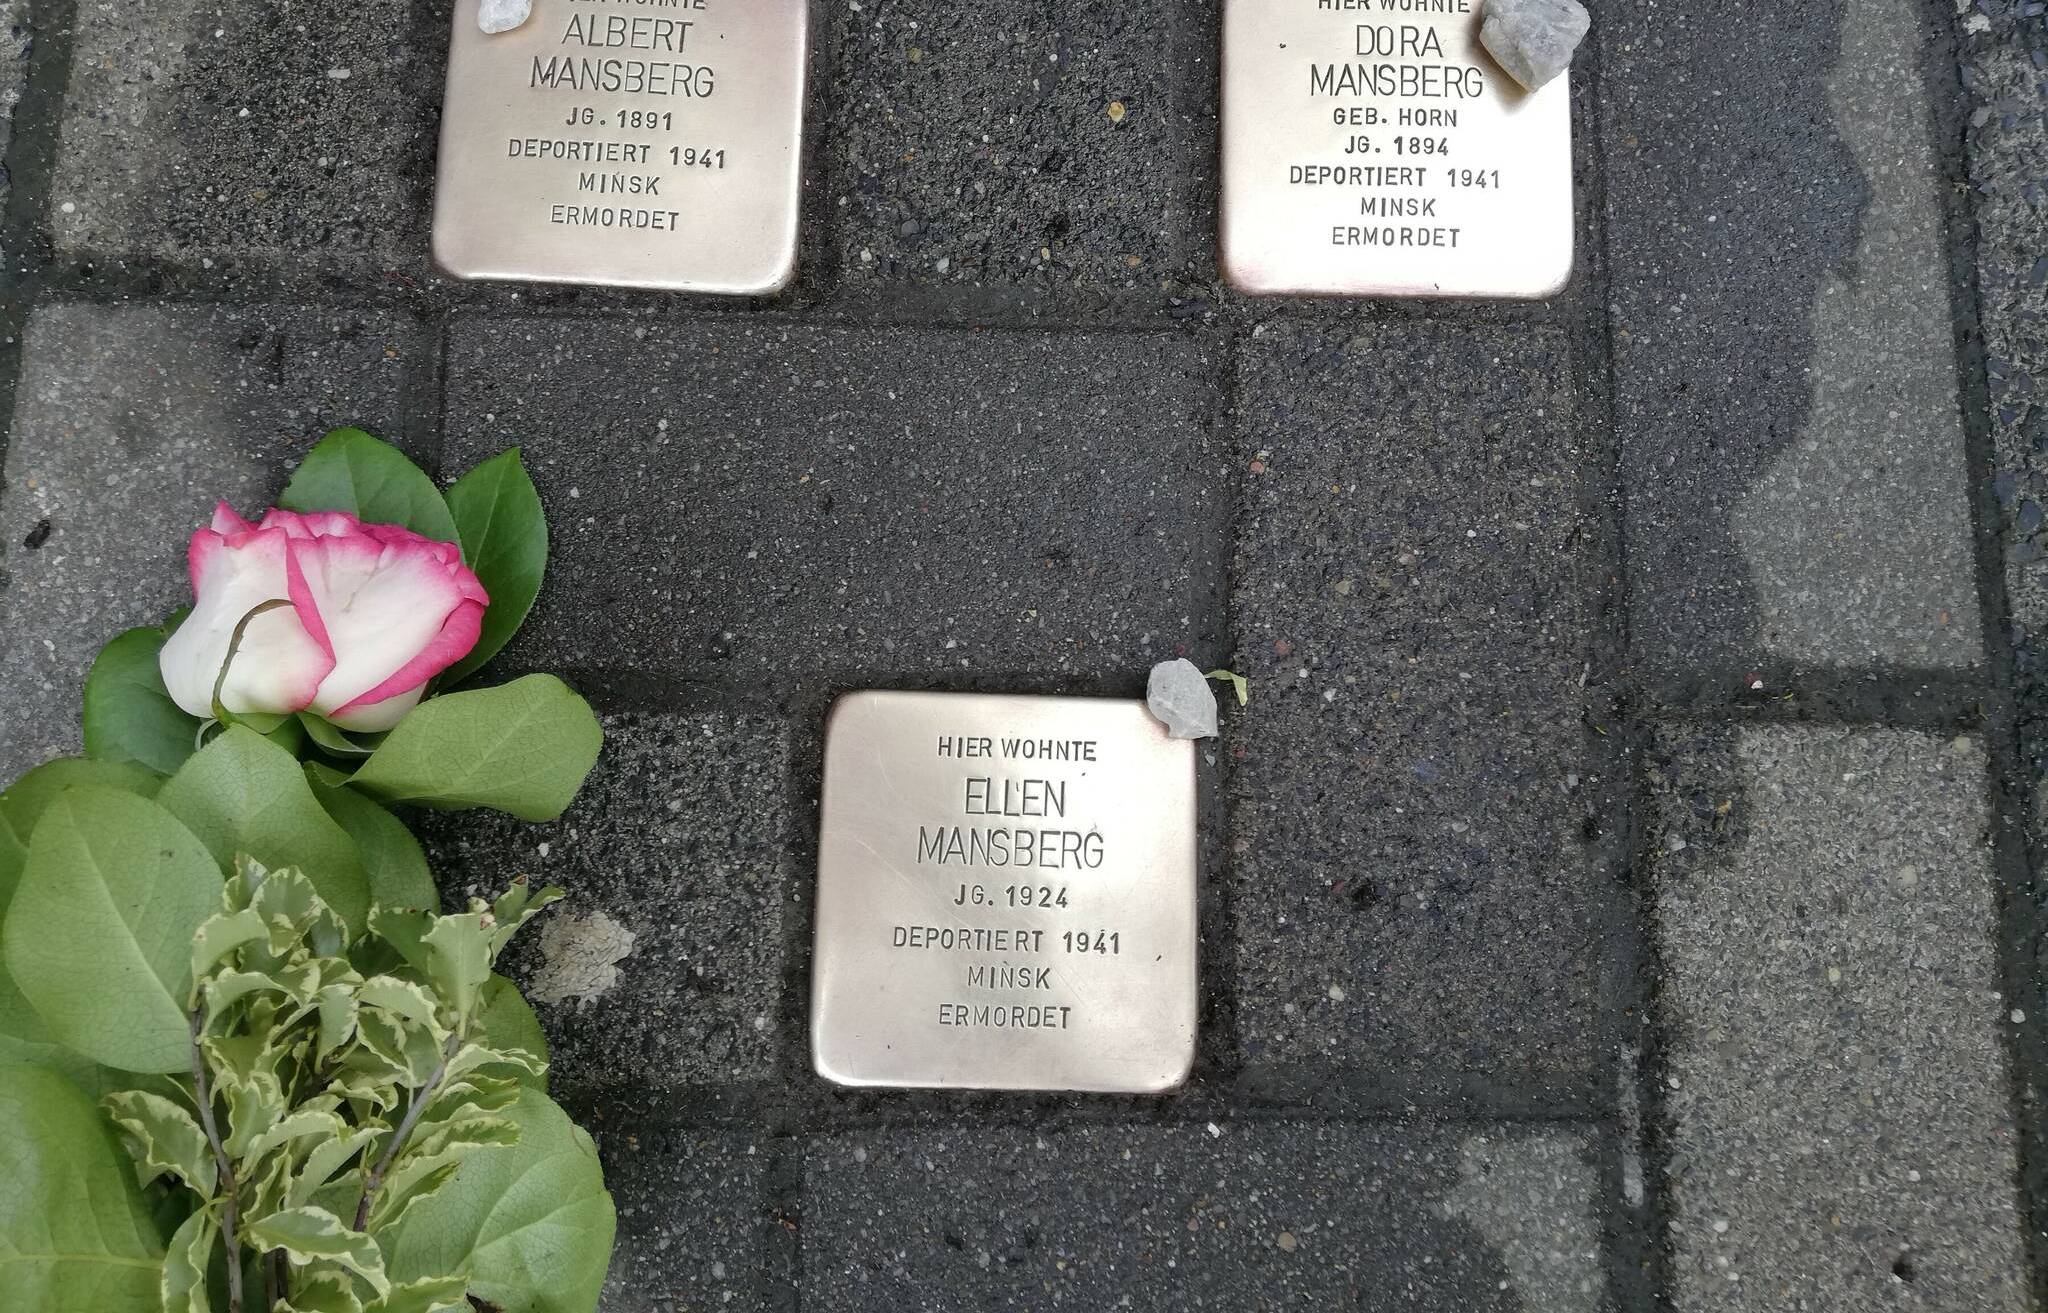  Die Stolpersteine glänzen wieder: Am 21. März säuberten drei Wuppertaler die Gedenksteine, legten Rosen ab und kleine Steine vom Gut Winkel (Spreenhagen). 